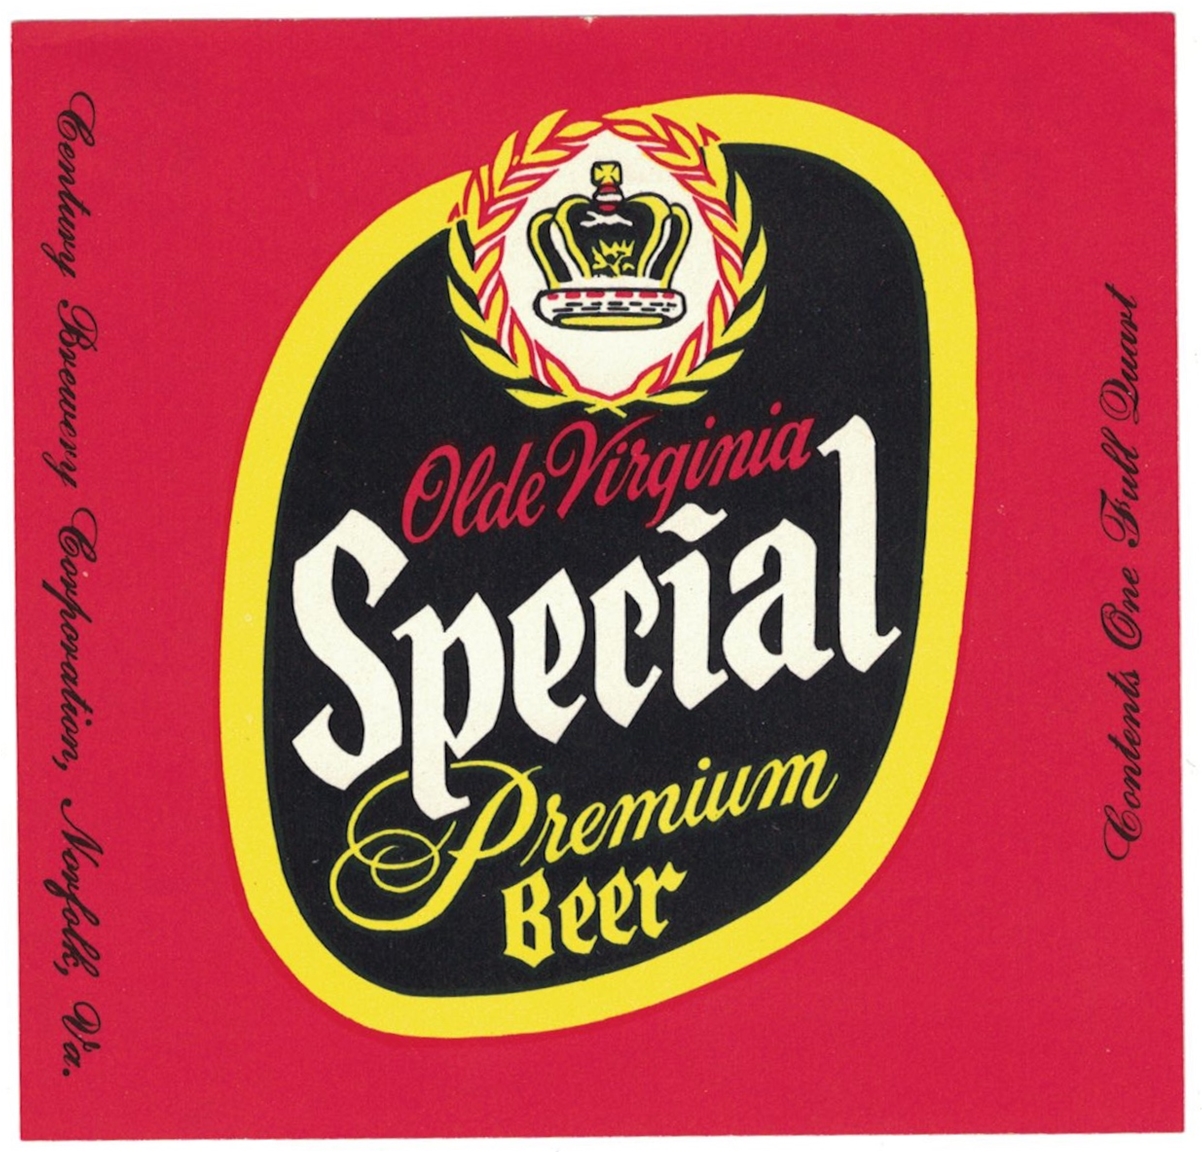 Olde Virginia Special Premium Label